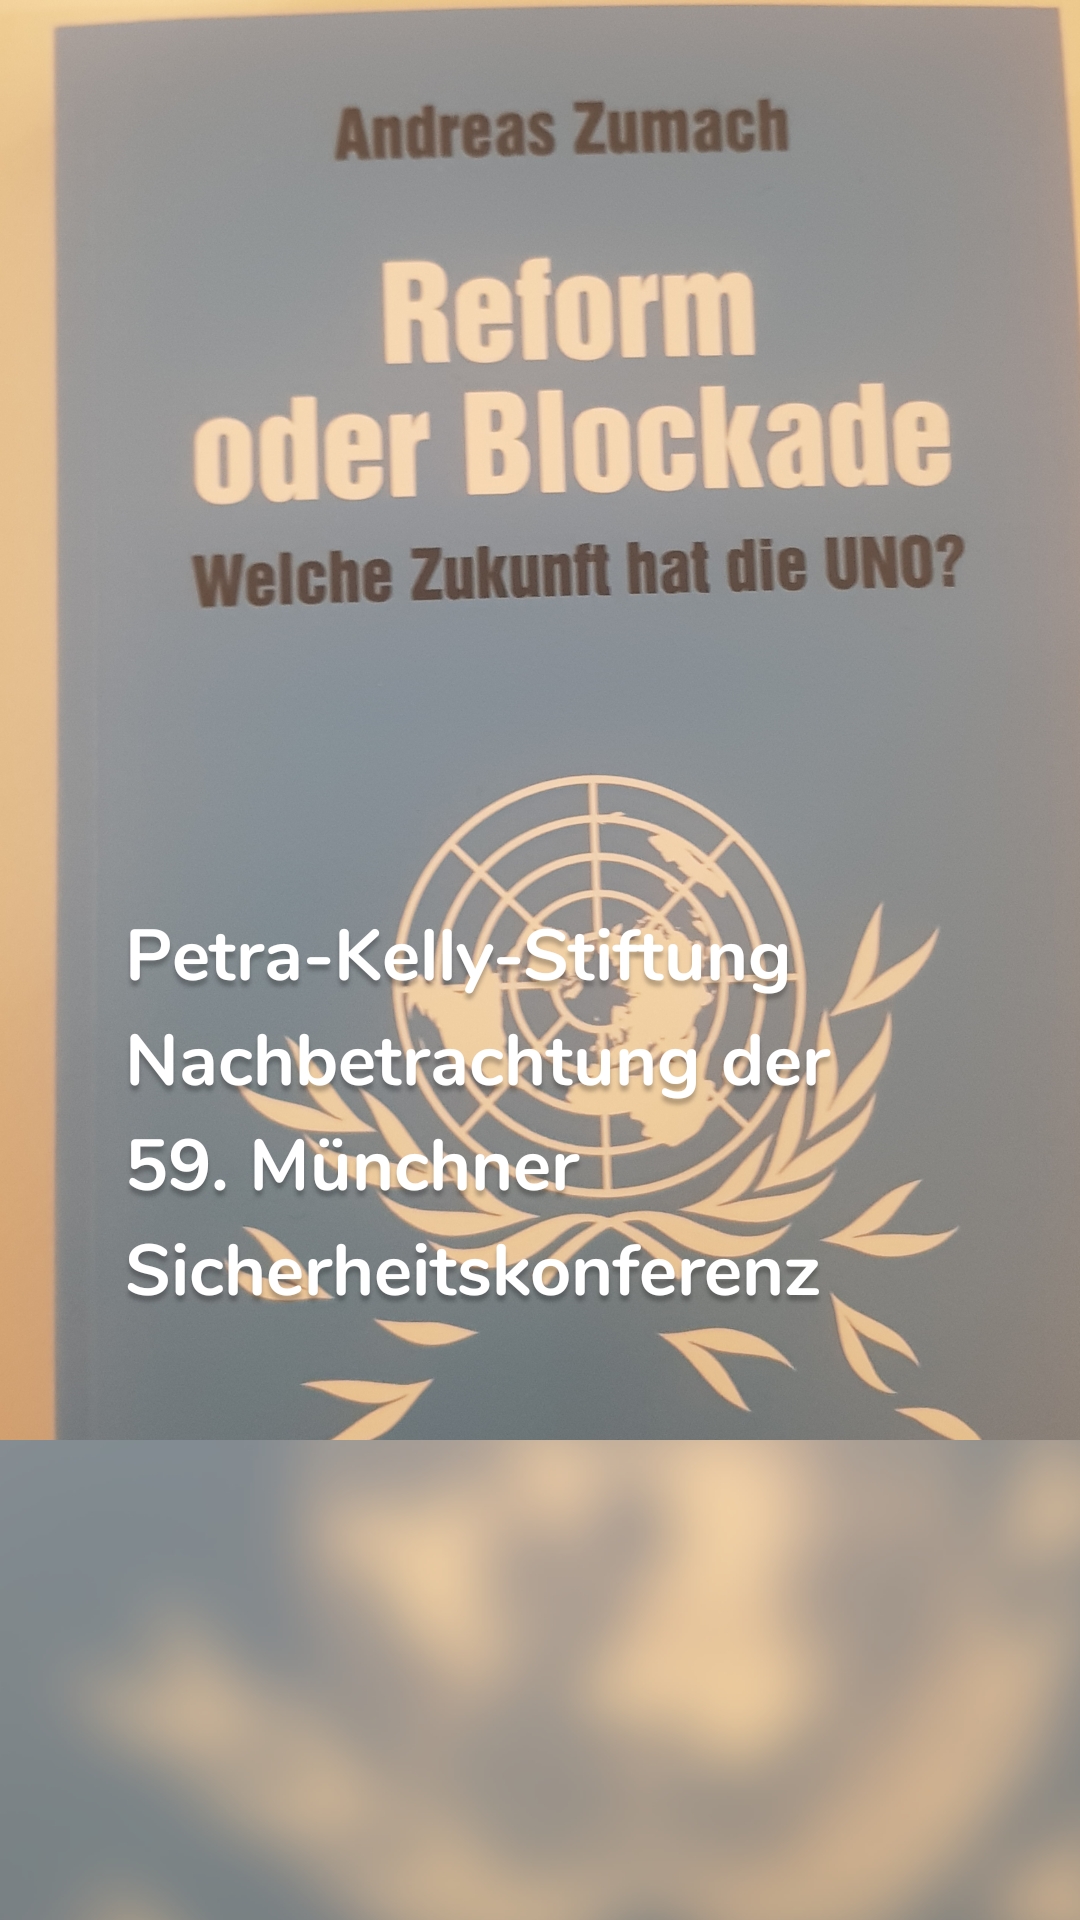 Petra-Kelly-Stiftung 
Nachbetrachtung der 59. Münchner Sicherheitskonferenz